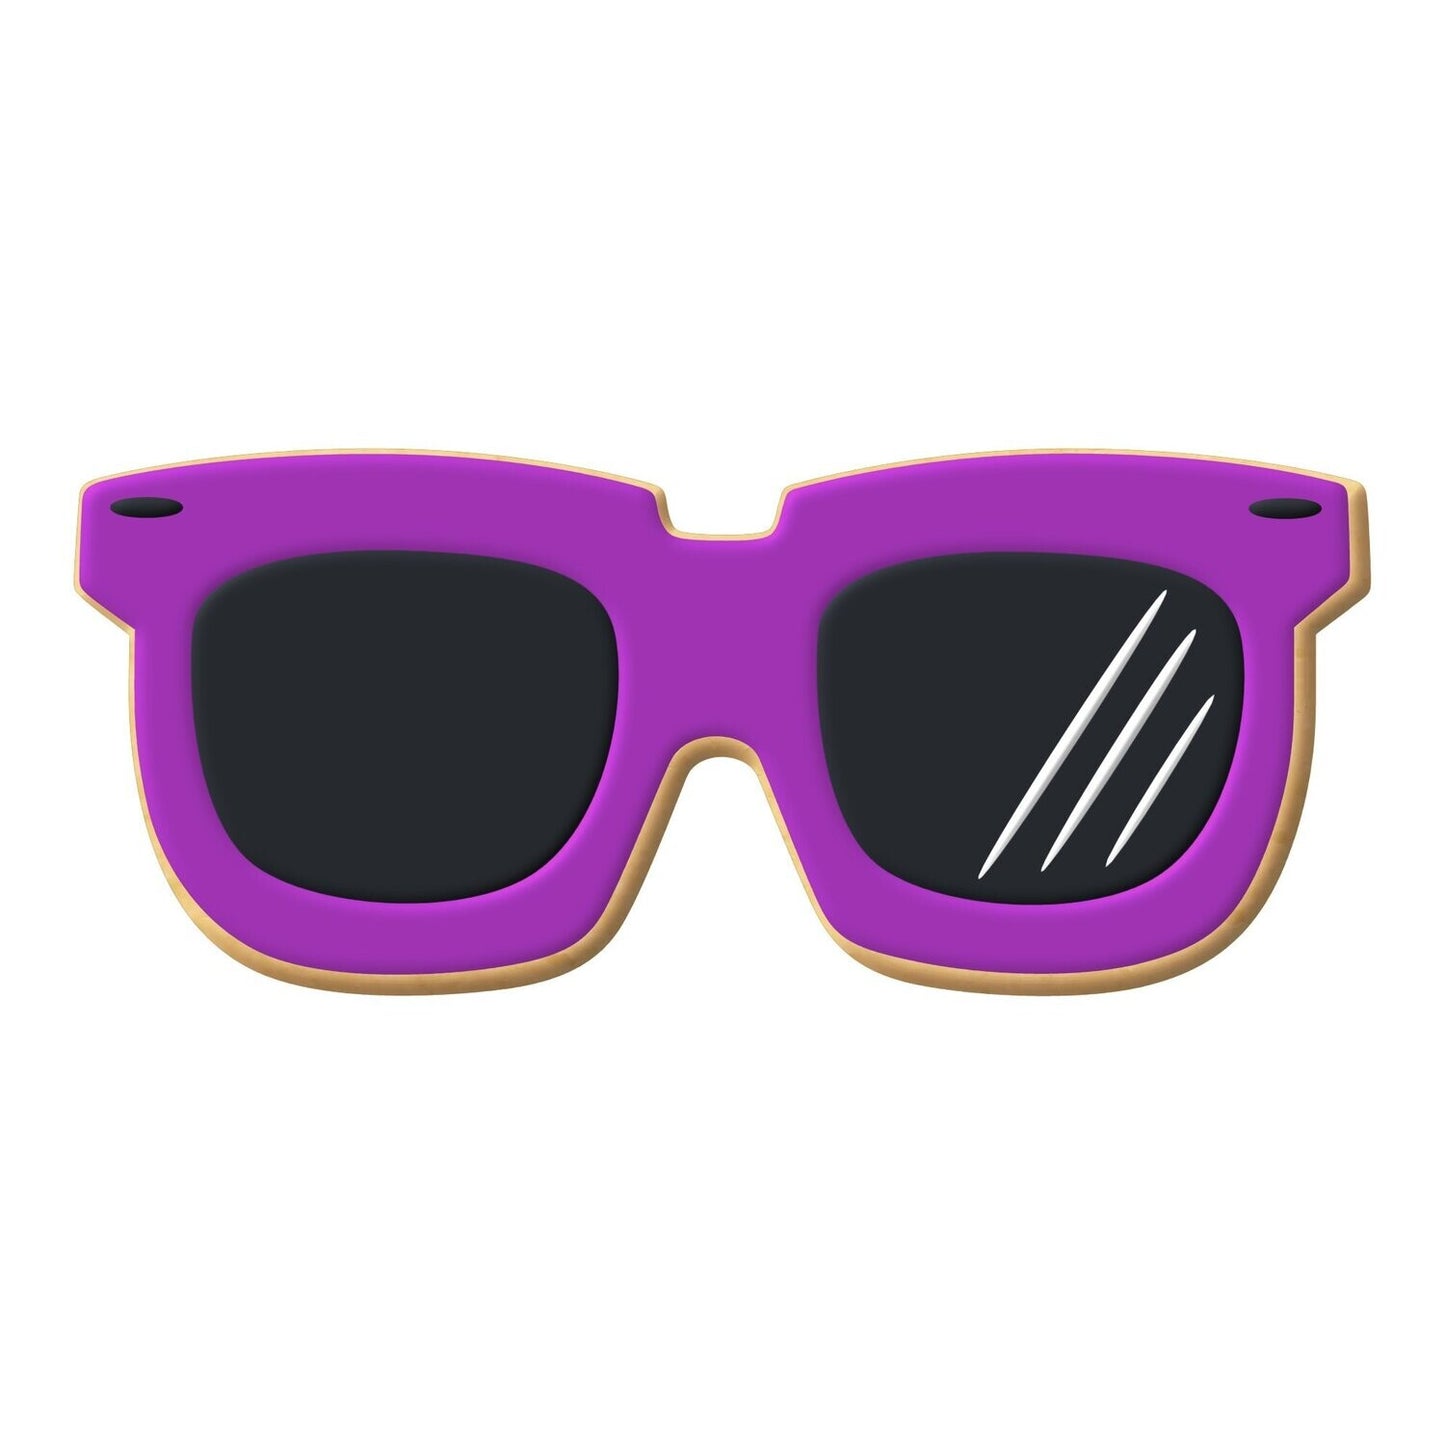 Sunglasses Cookie Cutter, 3.75"